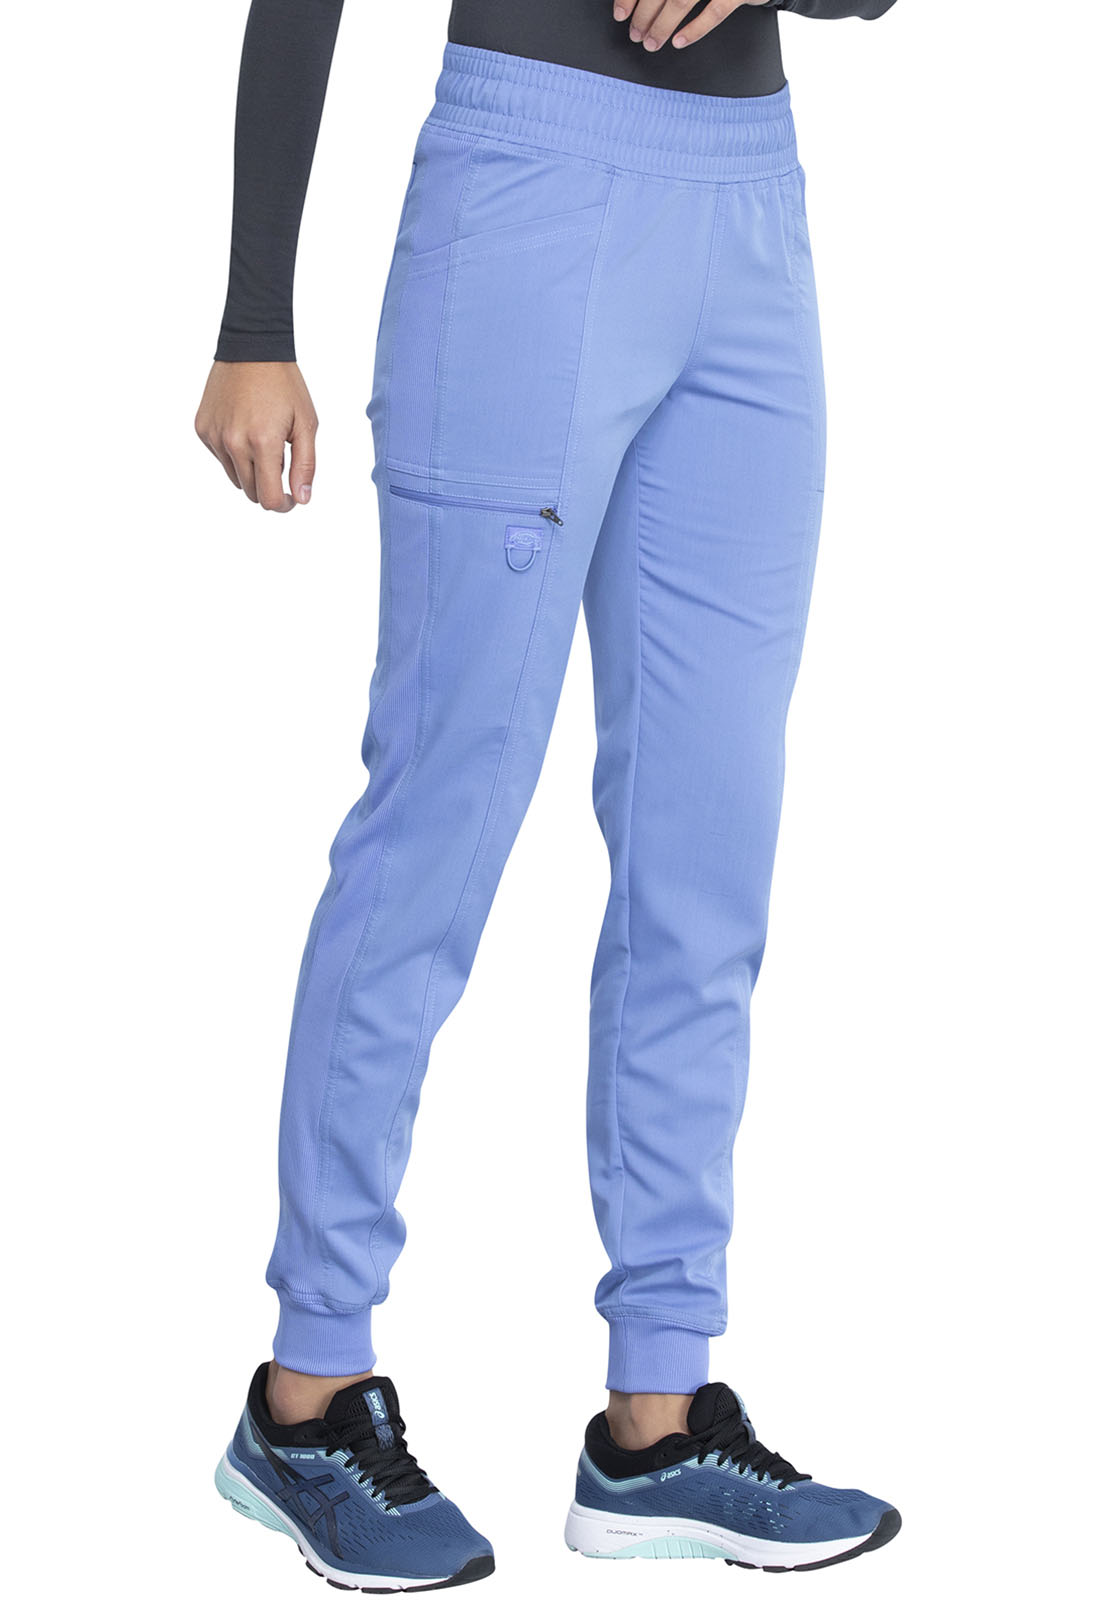 Pantalón del uniforme médico mujer unicolor Dickies balance dk080 cie